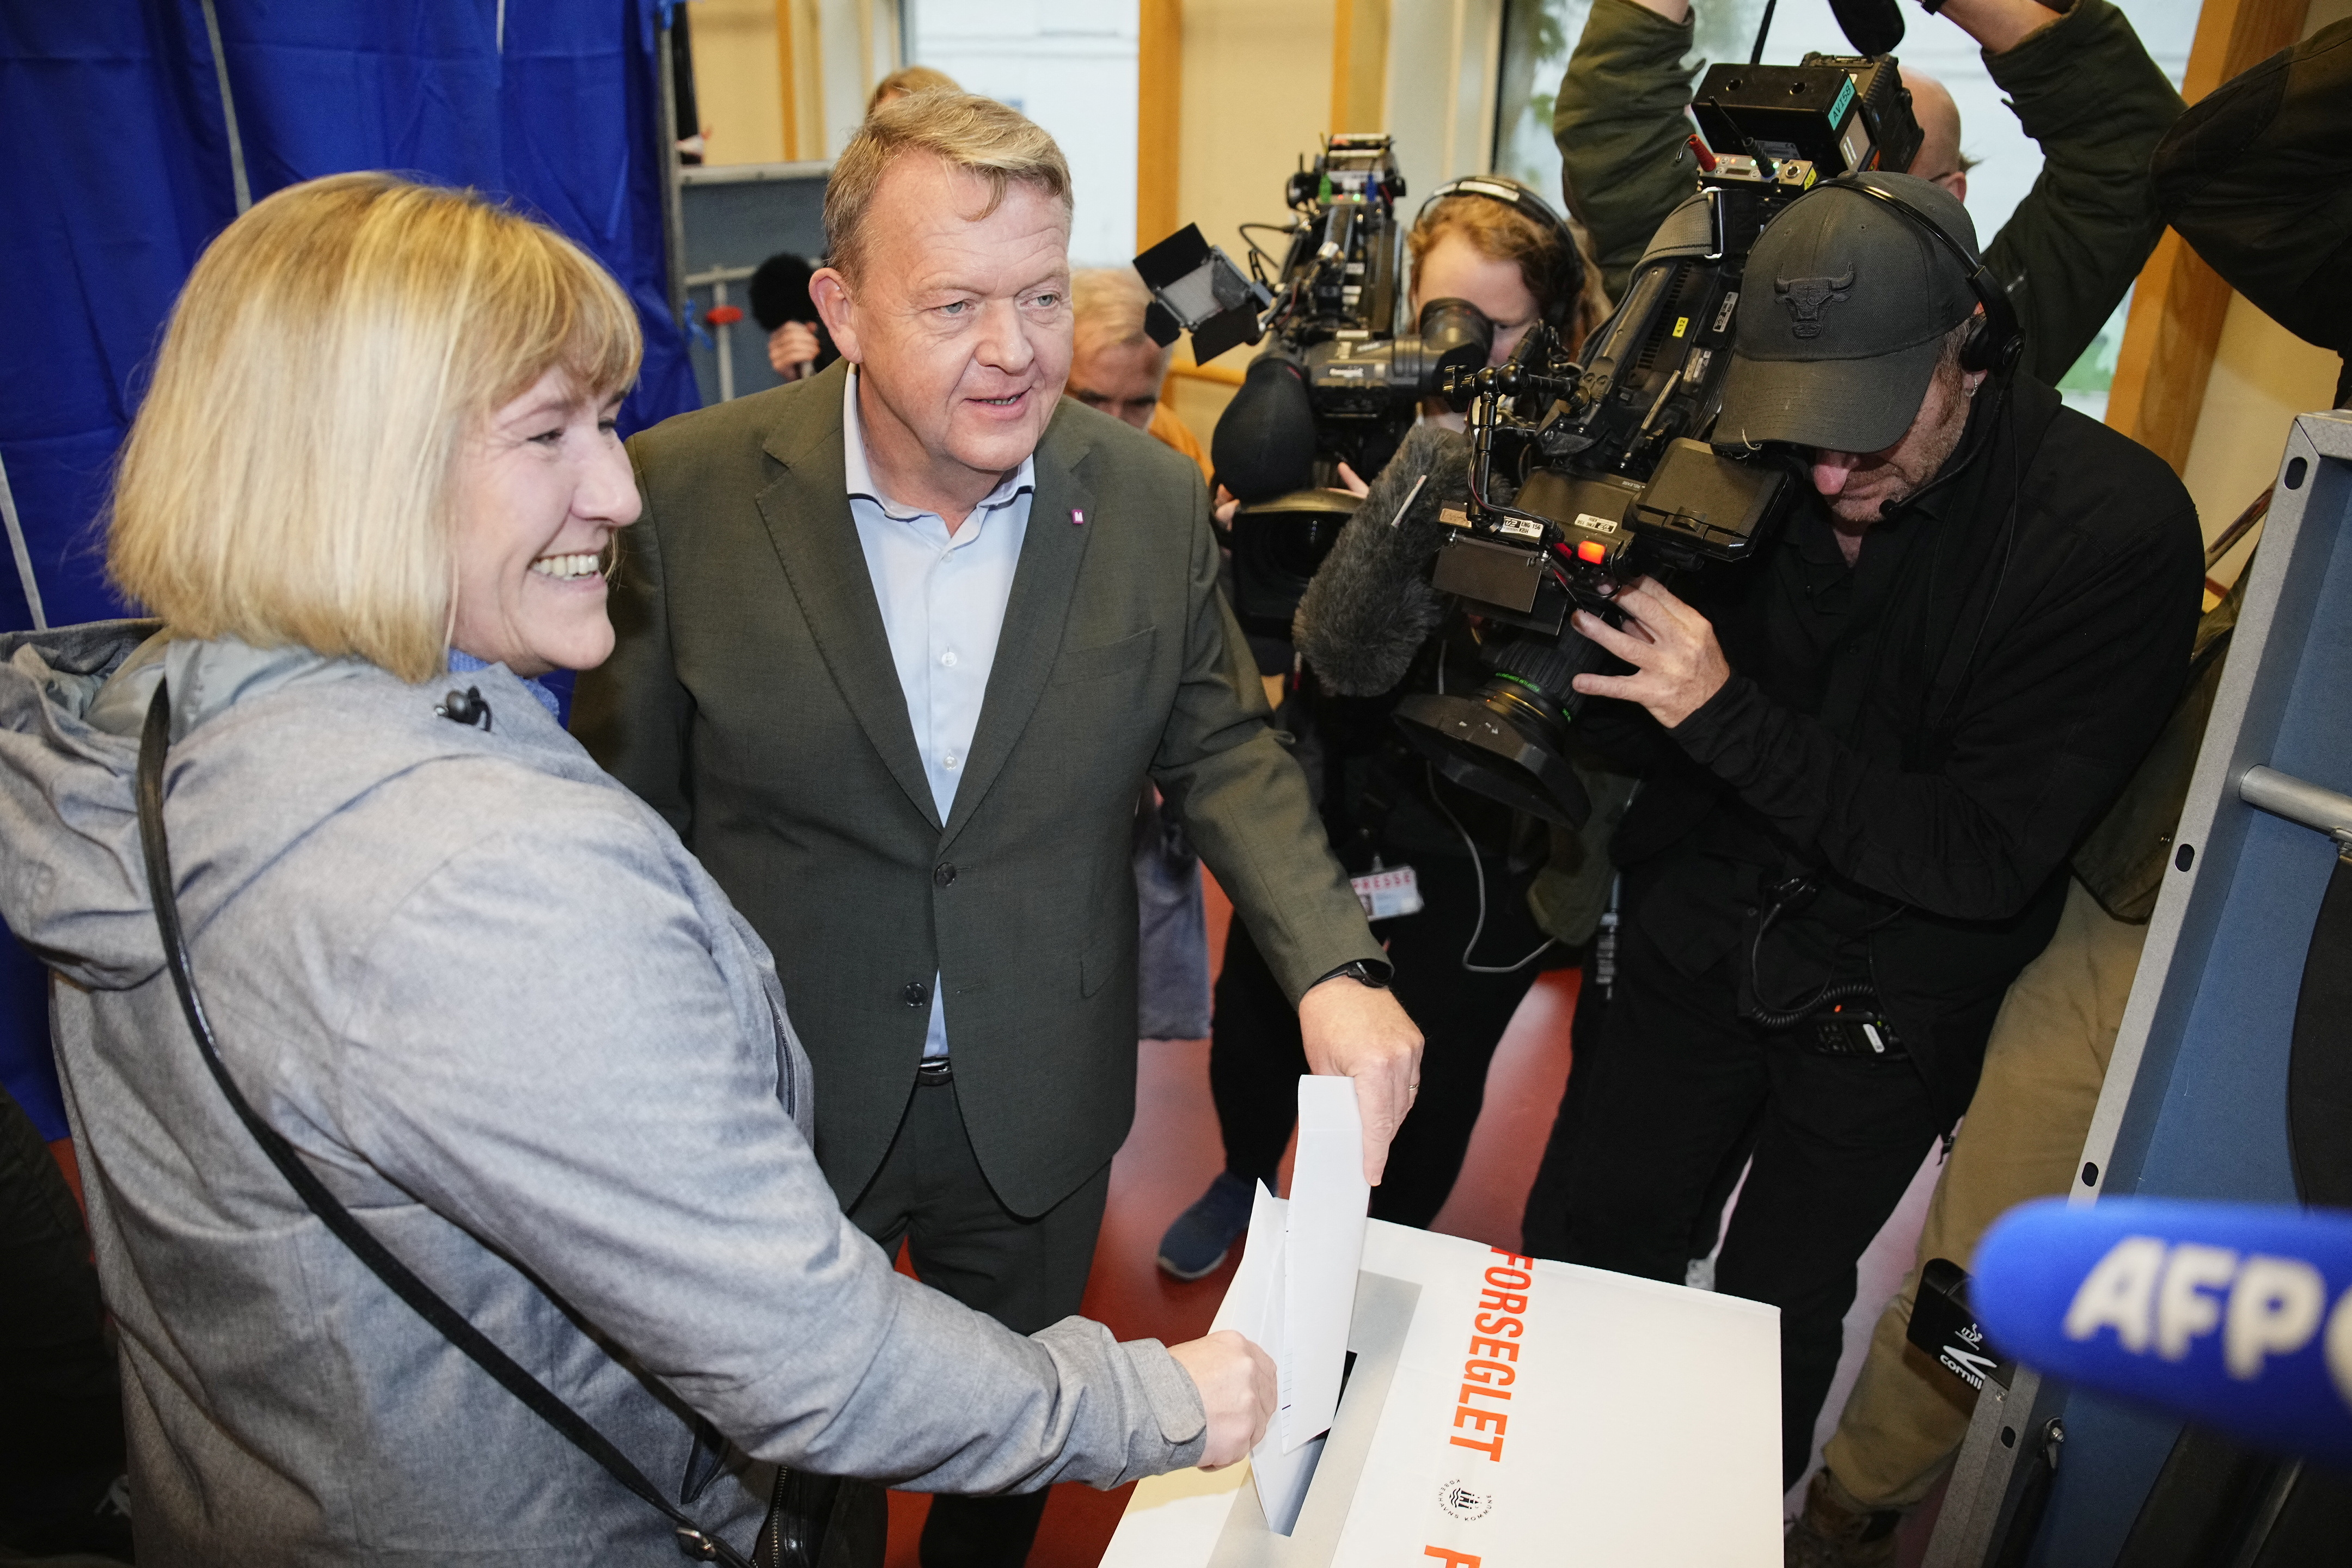 Der Vorsitzende der dänischen Moderaten - Lars Loekke Rasmussen - und seine Frau Solrun Loekke Rasmussen stimmen in Kopenhagen ab. | via REUTERS